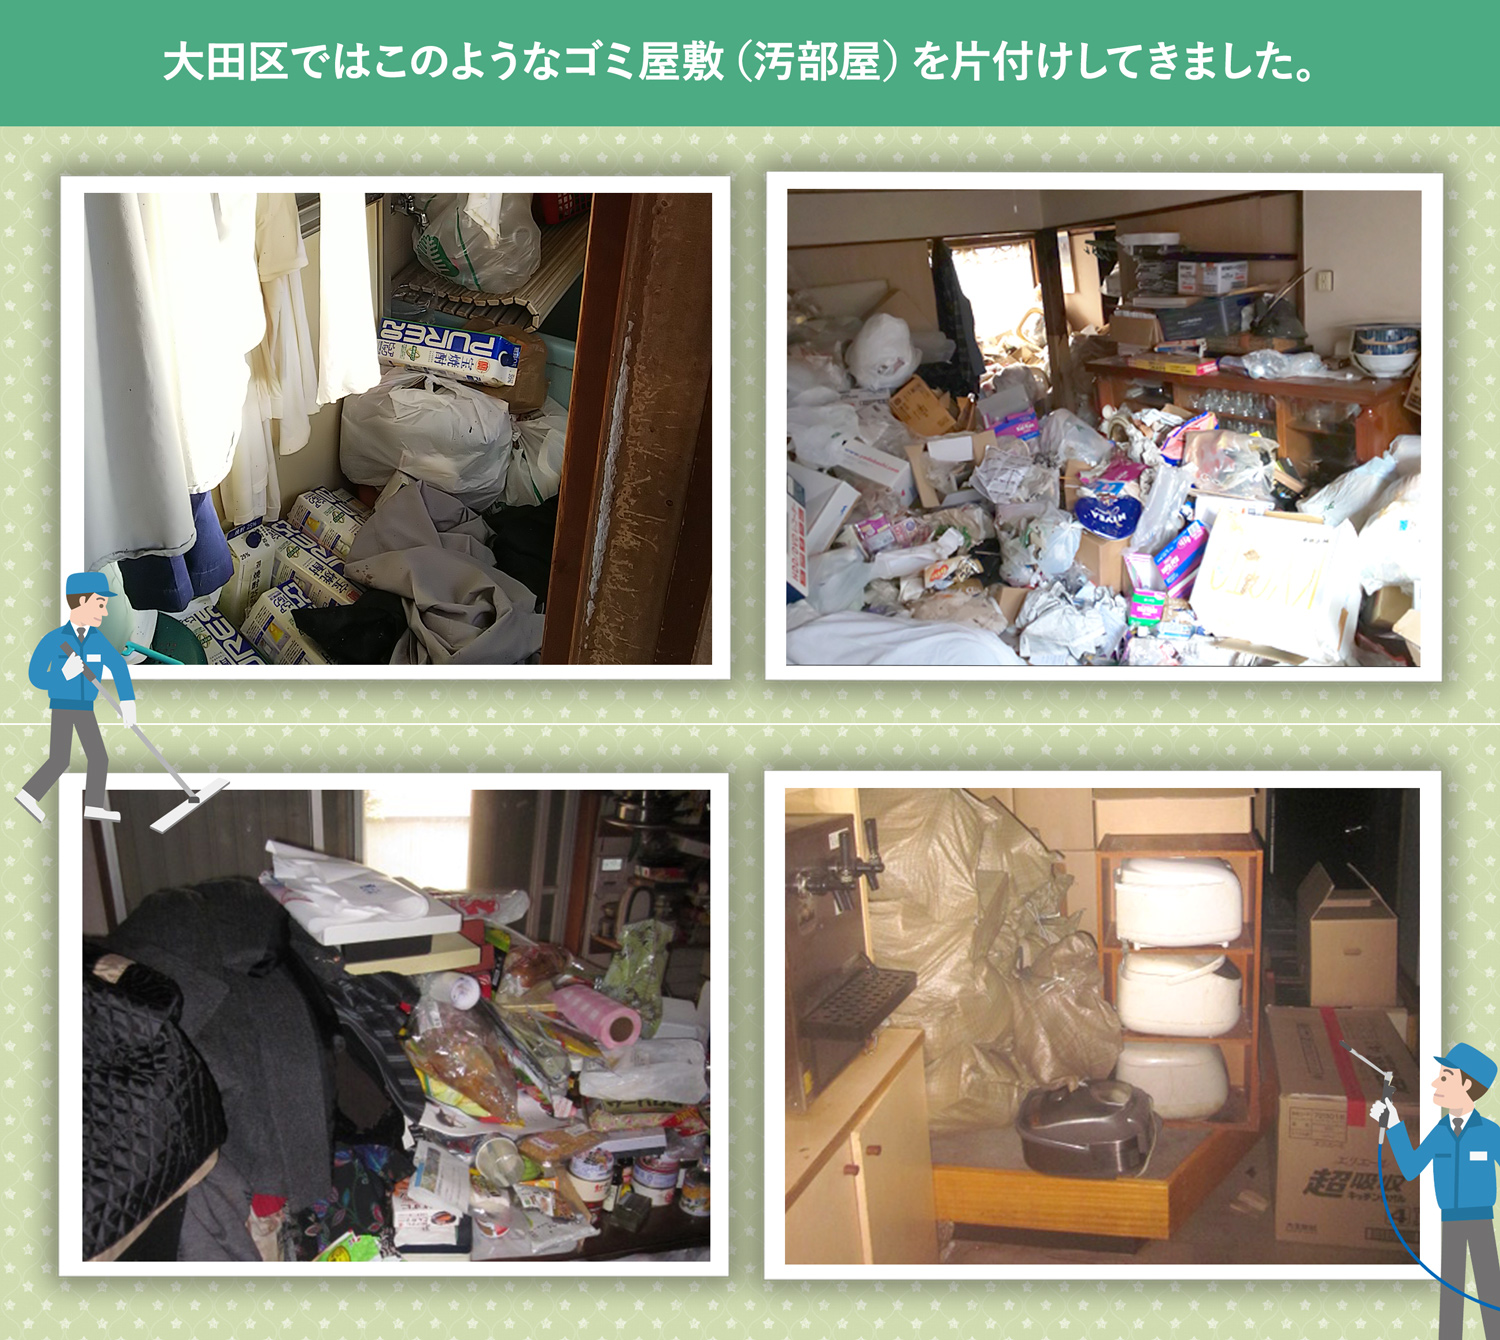 大田区で行ったで行ったごみ屋敷・汚部屋の片付けの一例